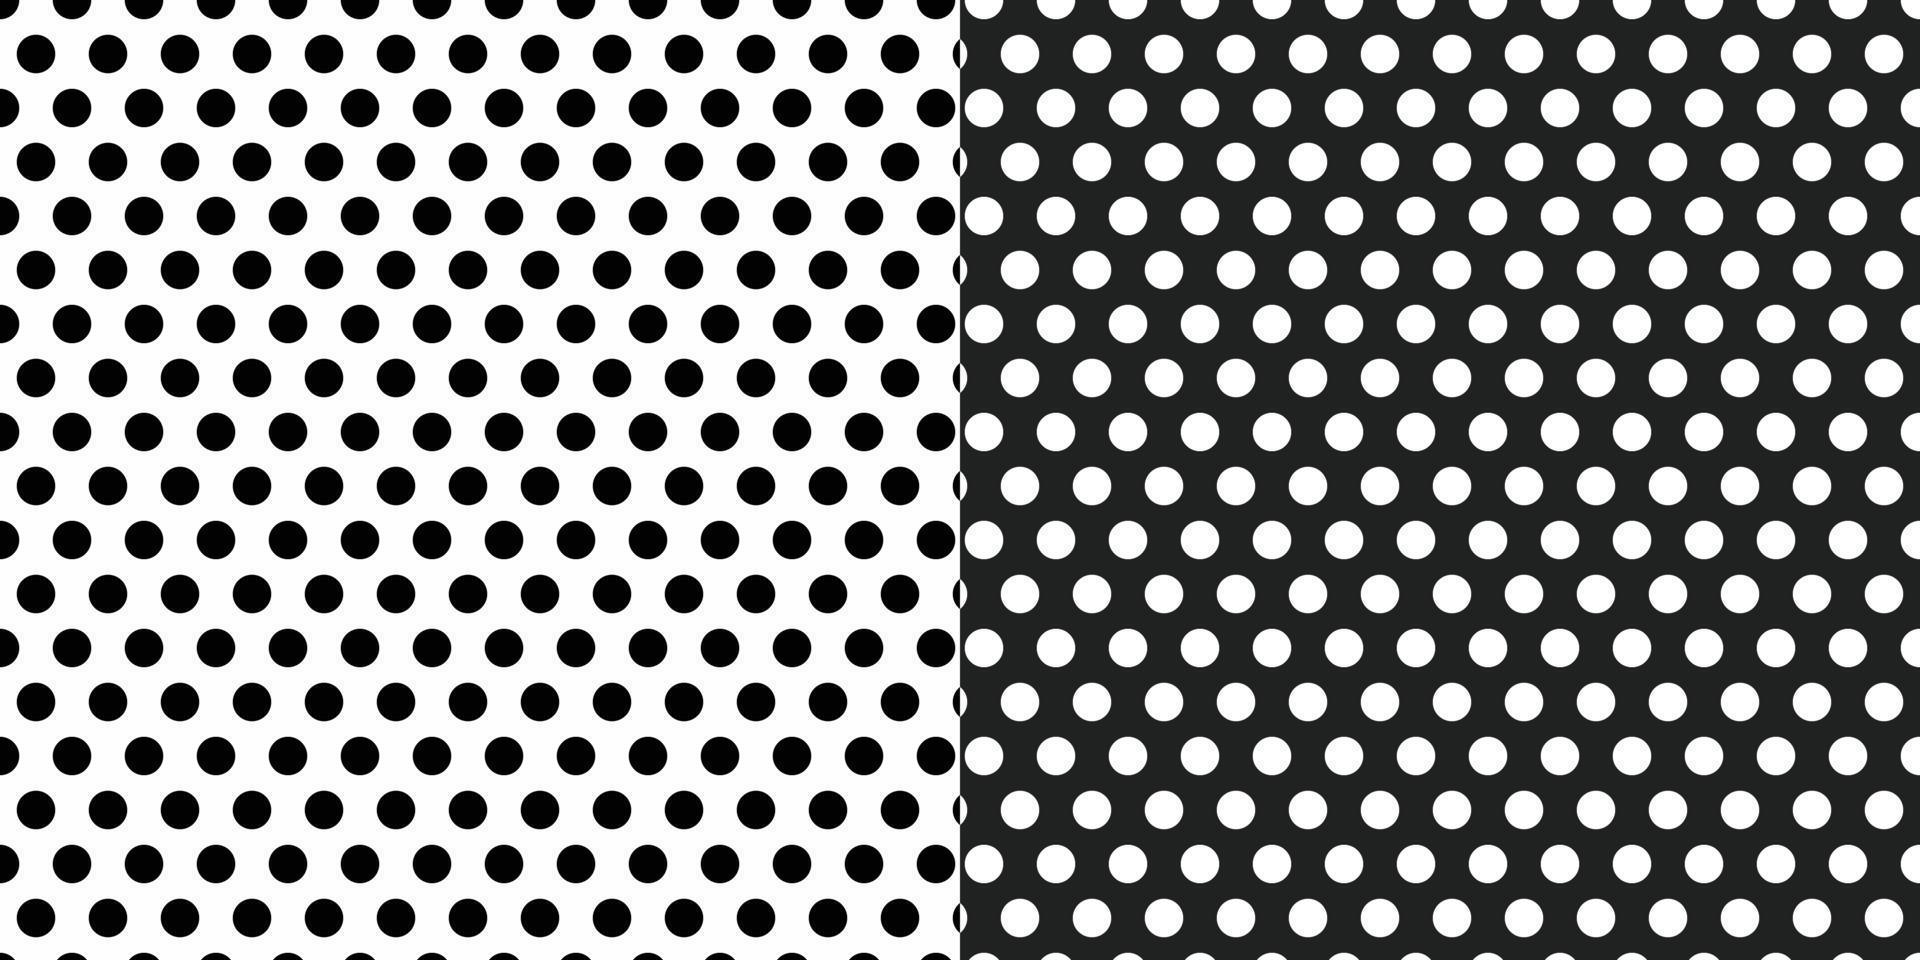 coleção de padrão de polkadot preto e branco editável vetor